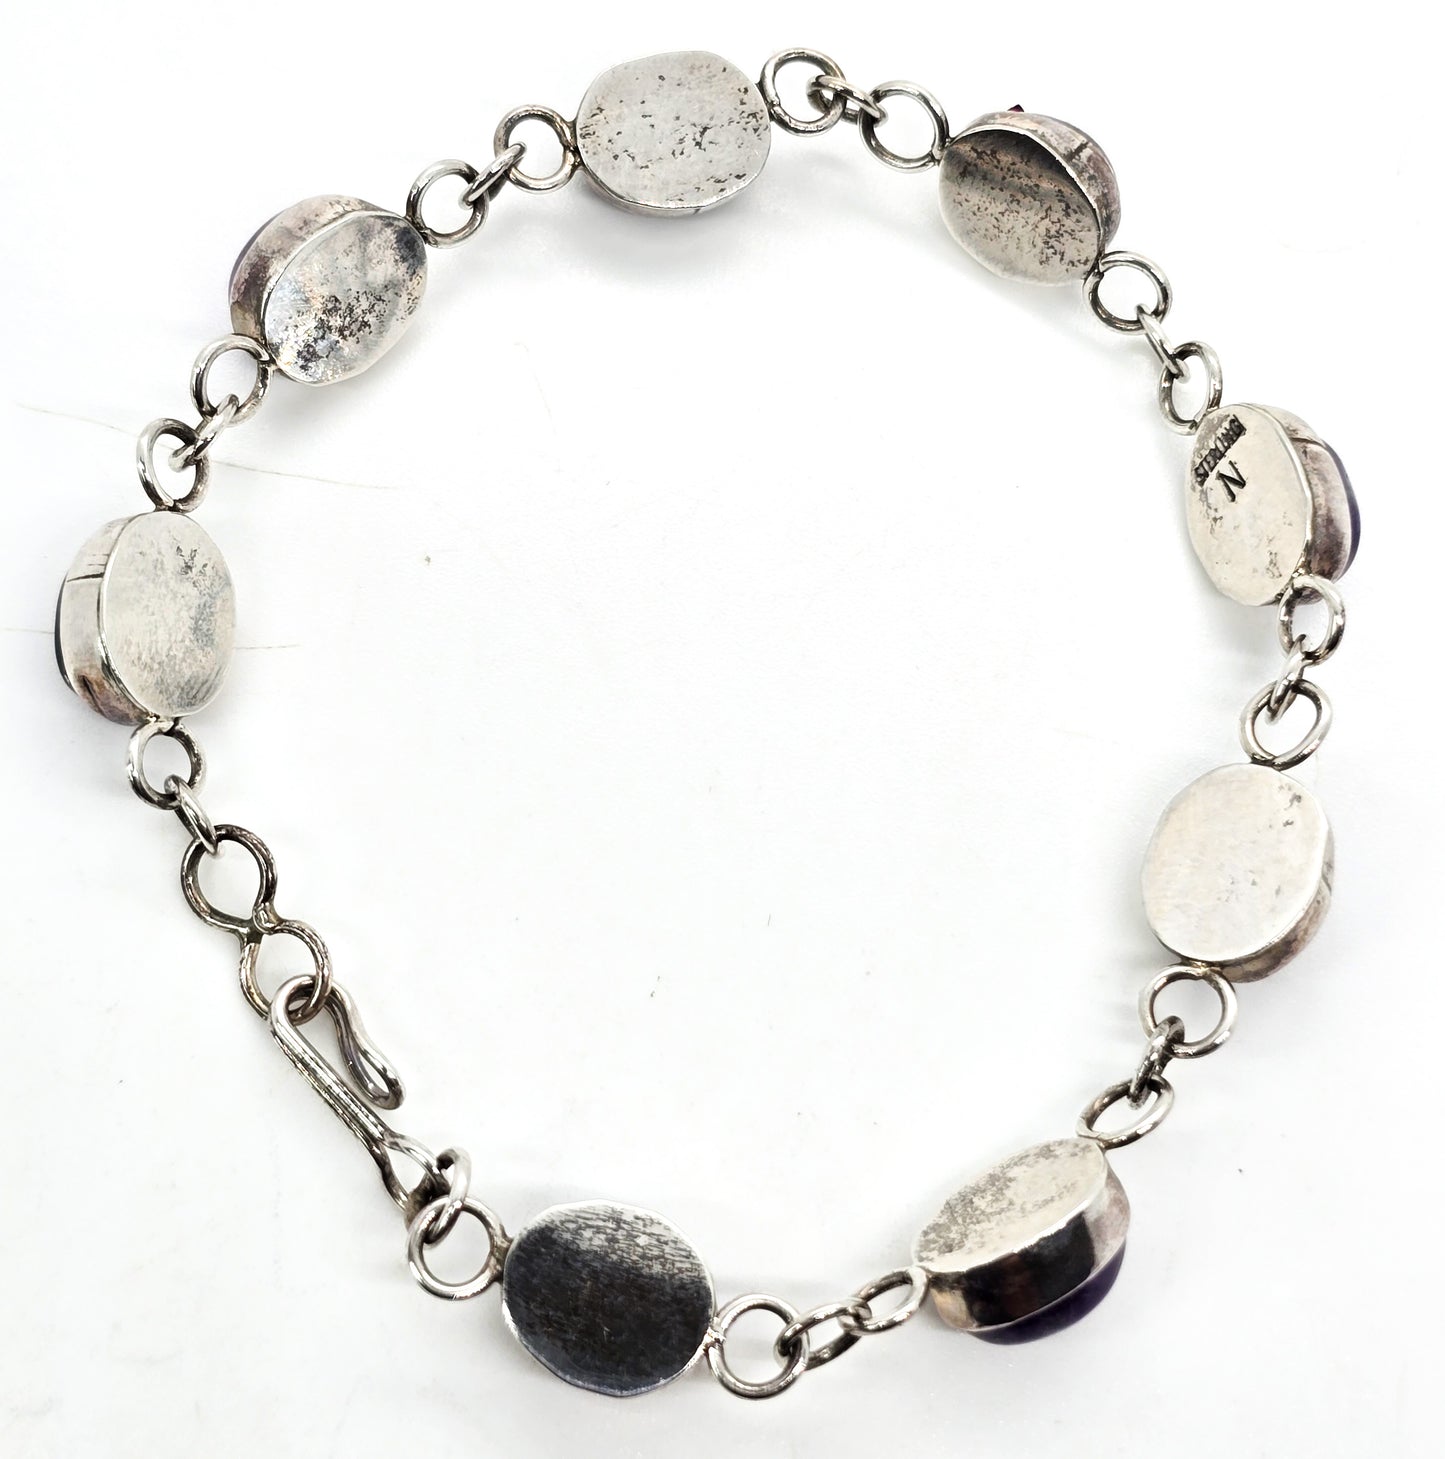 Amethyst domed cab sterling silver gemstone vintage tennis bracelet